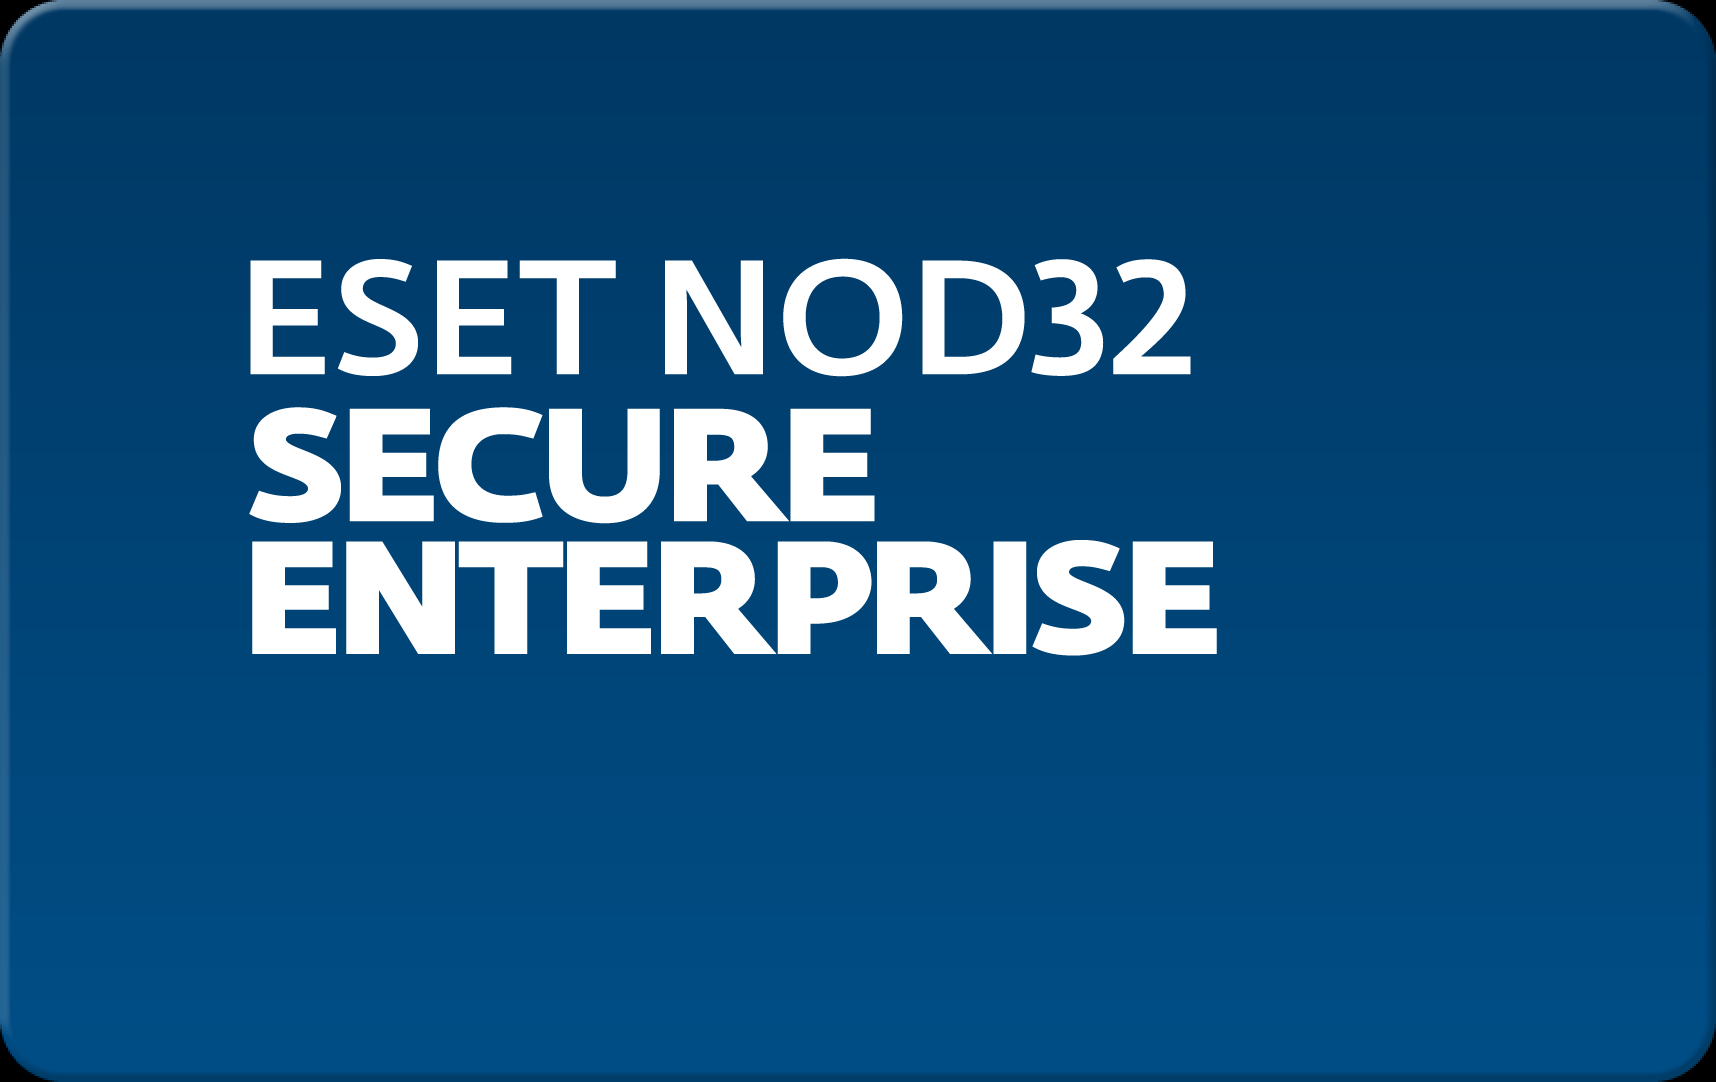        Eset NOD32 Secure Enterprise  139 